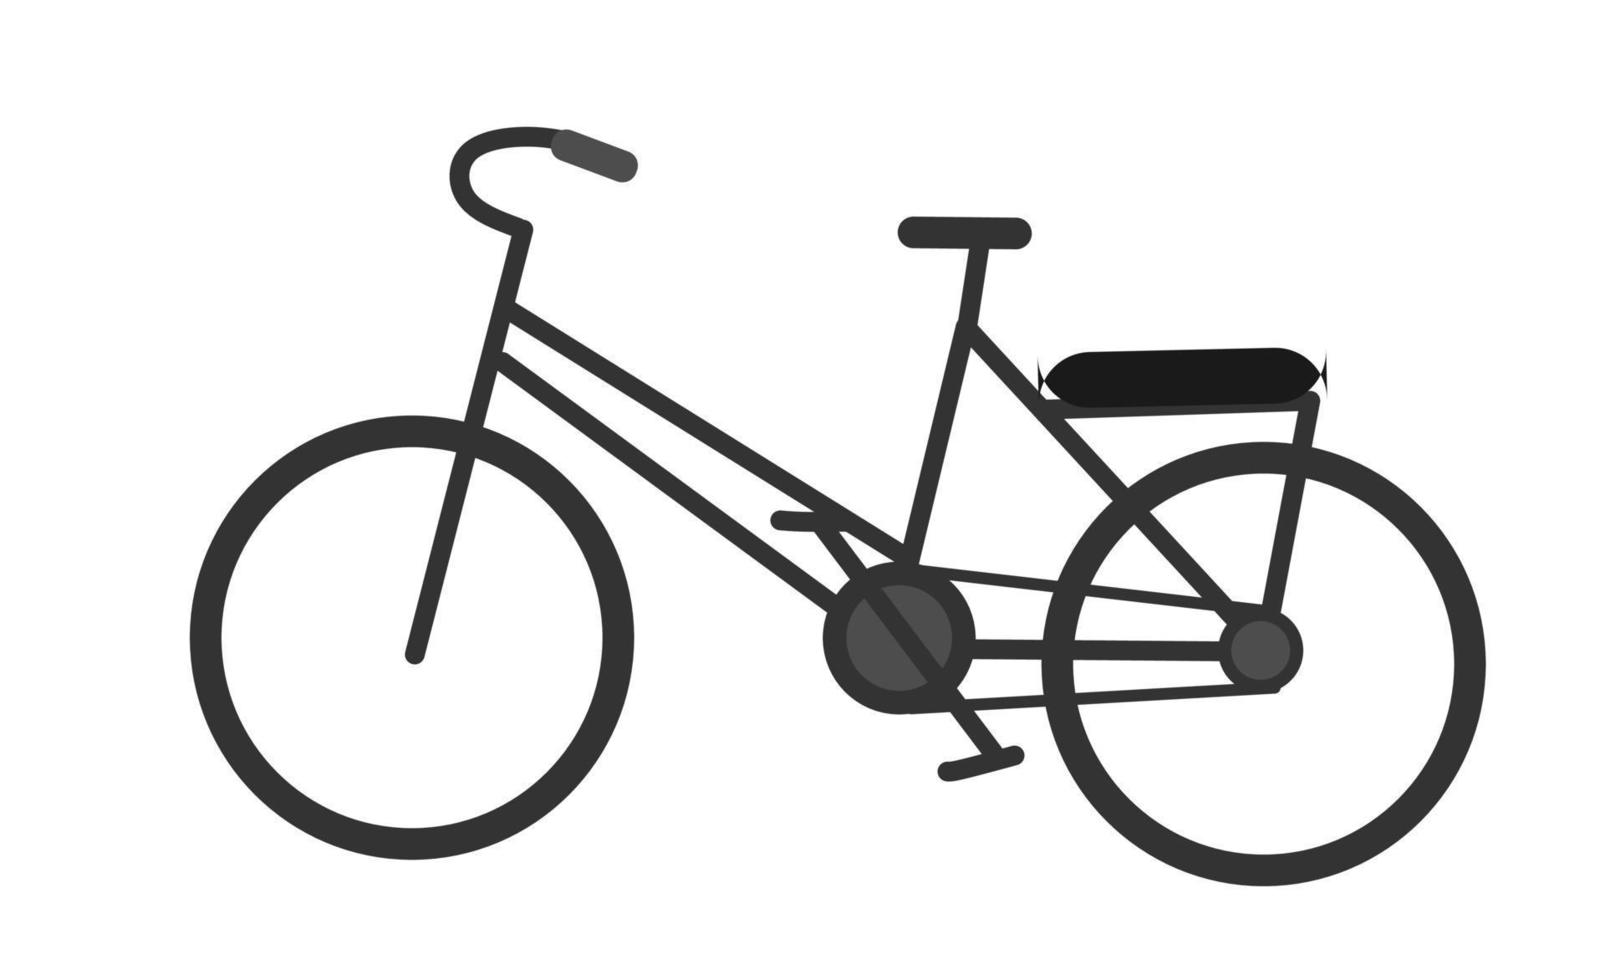 vélo, véhicule, veux dire de transport, transport vecteur